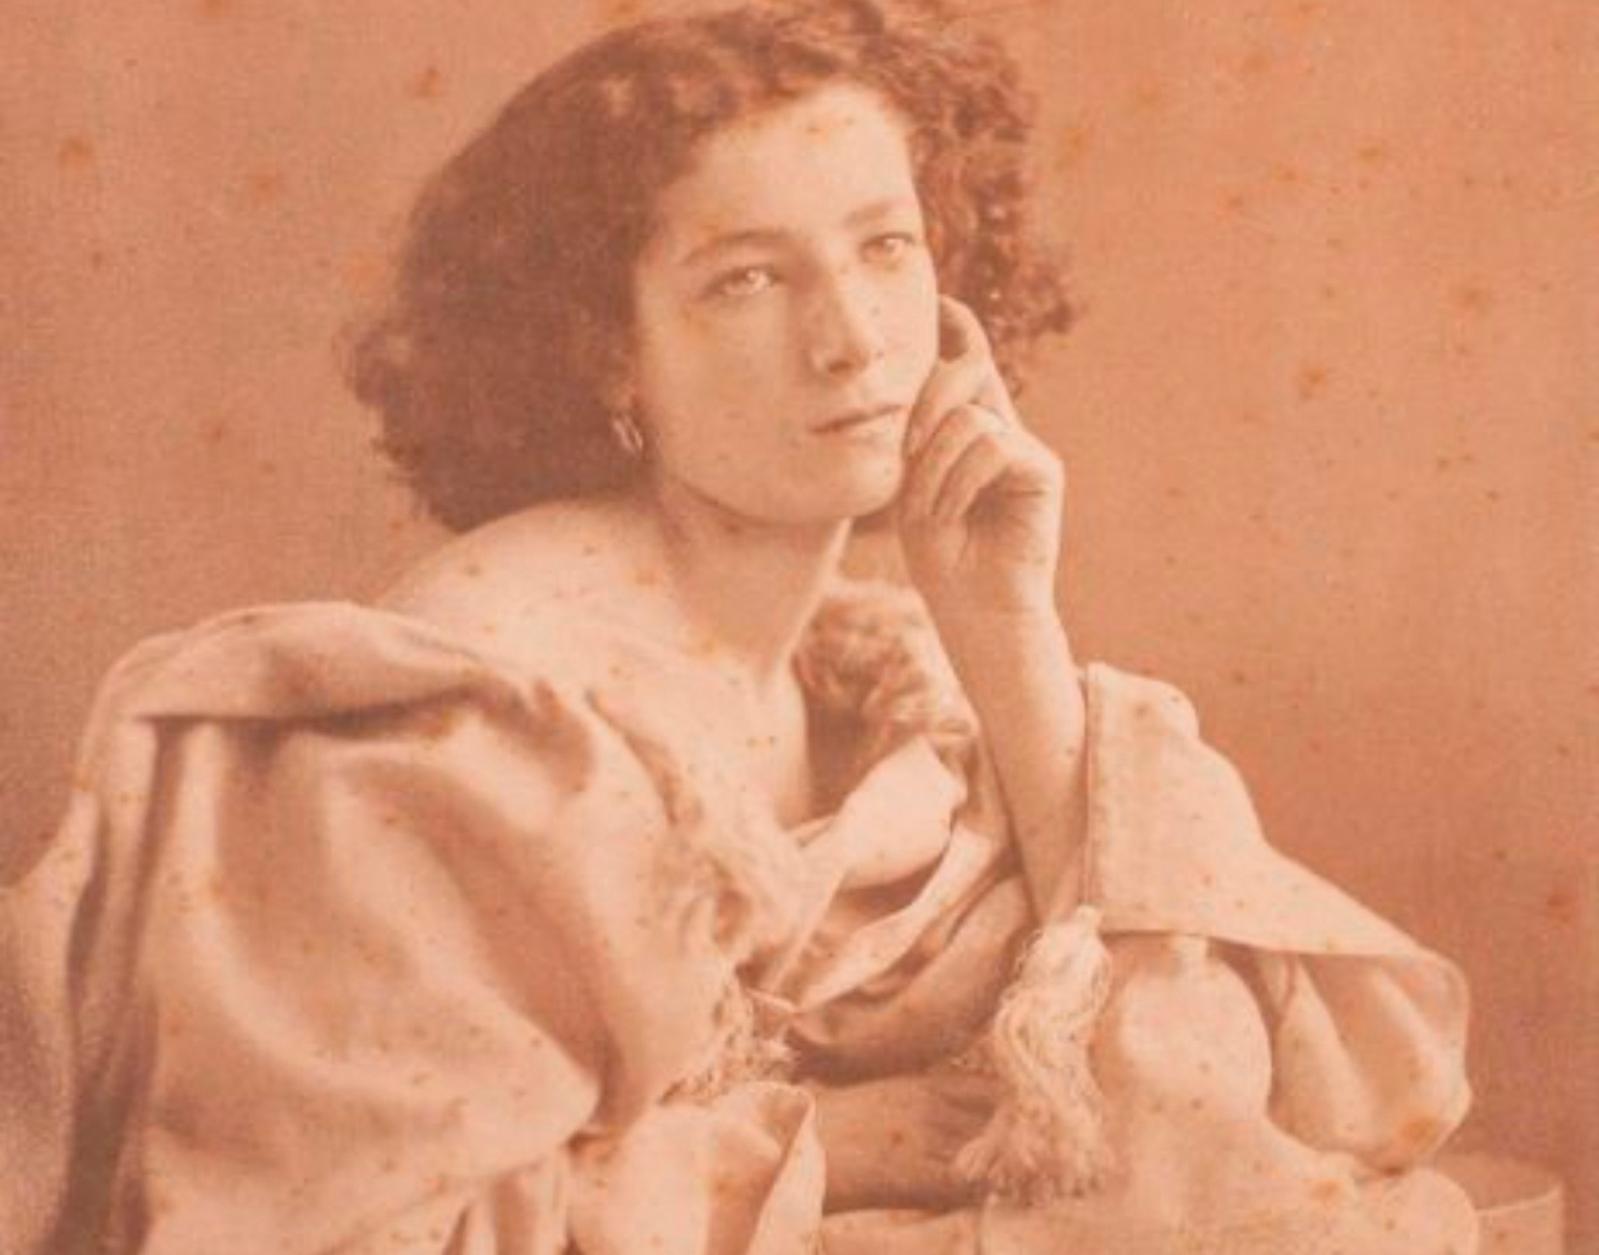 Félix Nadar (1820-1910), Sarah Bernhardt à 17 ans, vers 1861, épreuve sur papier salé d’après négatif verre au collodion, 21,8 x 16,3 cm (